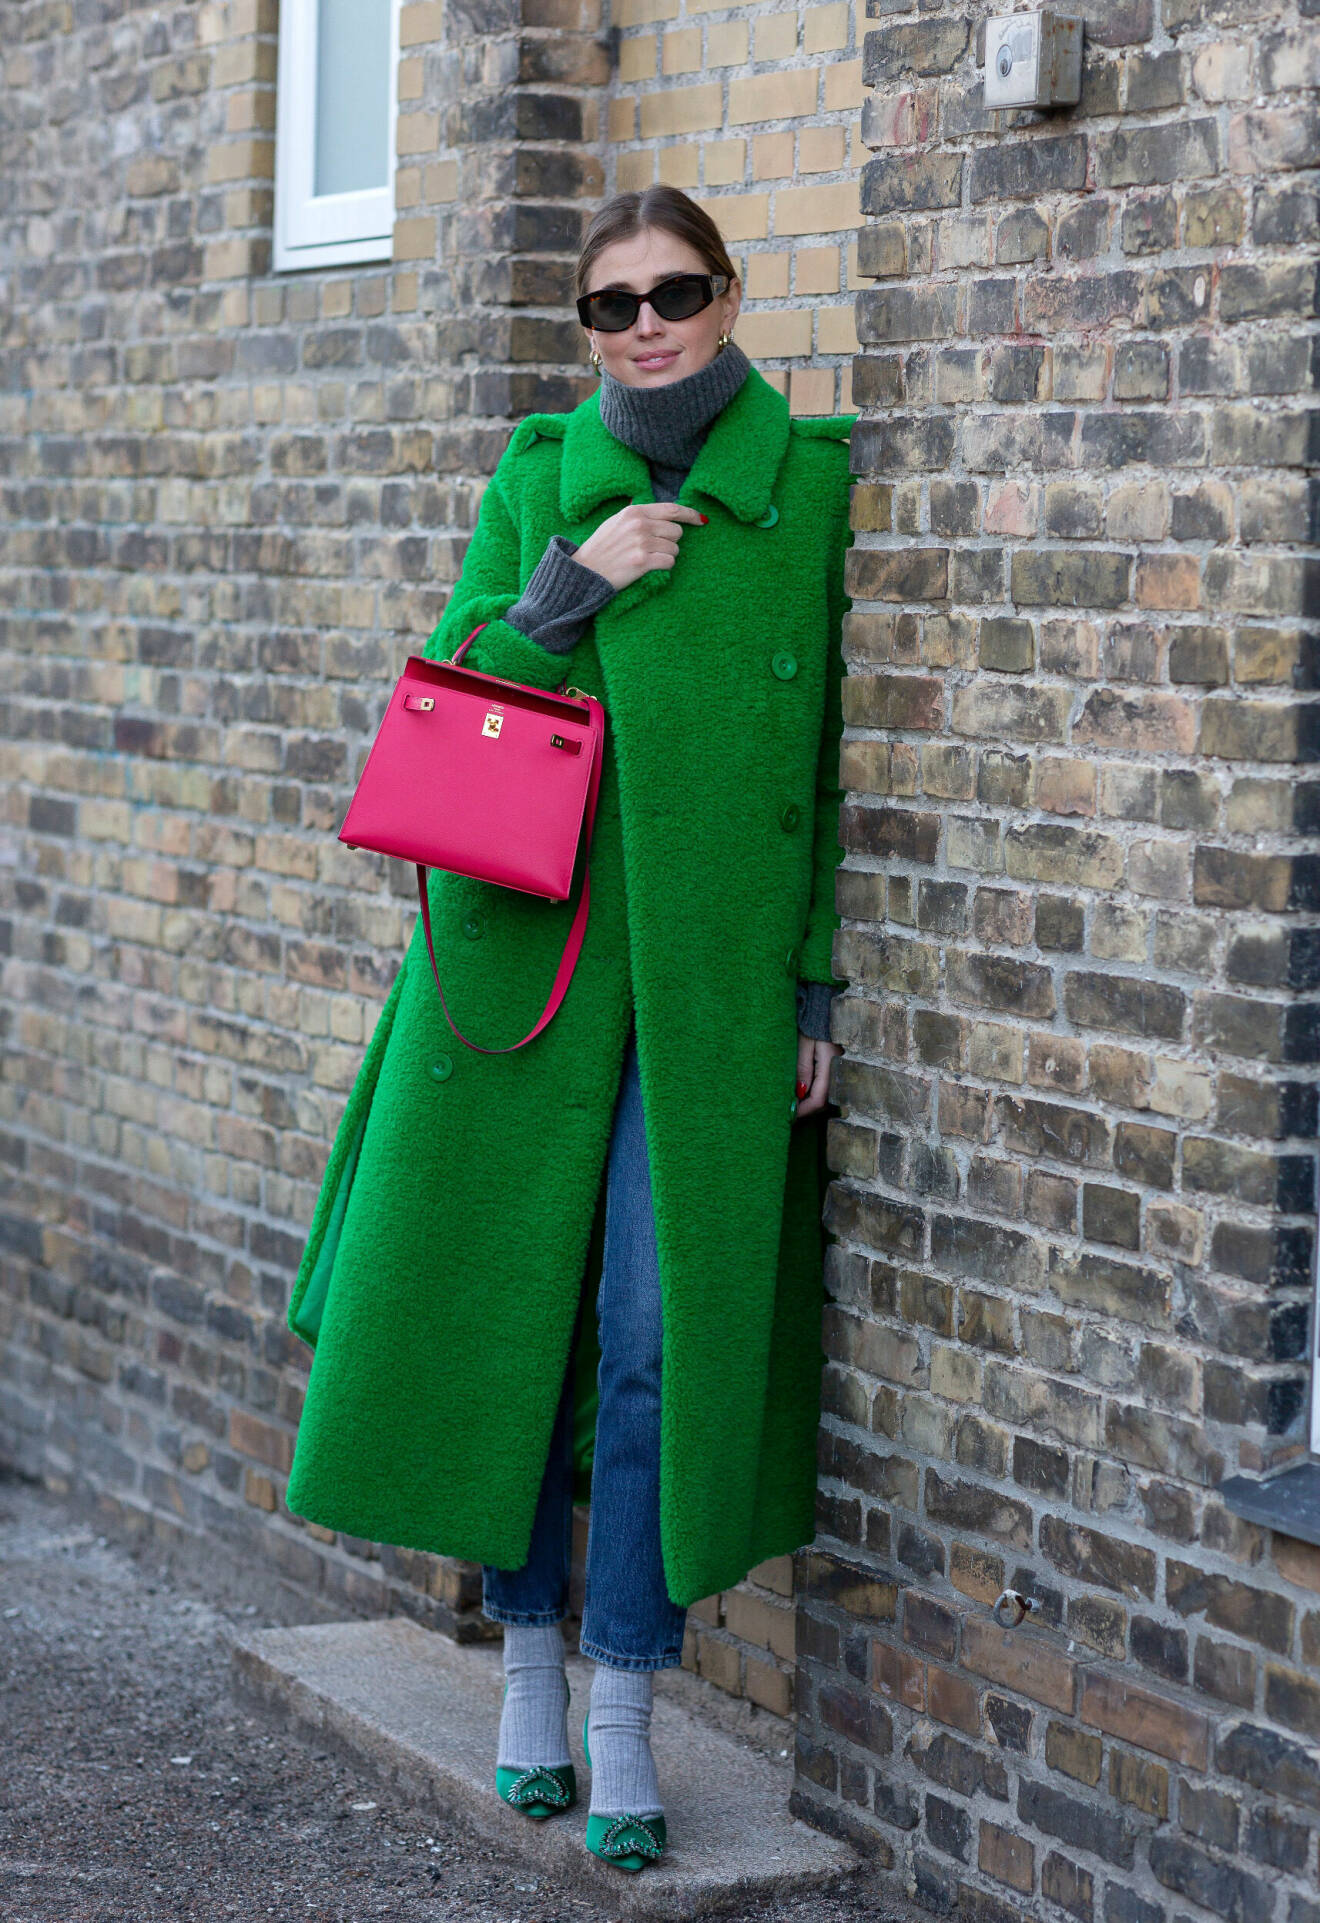 Darja Barannik i trendig grön kappa på modeveckan i Köpenhamn.